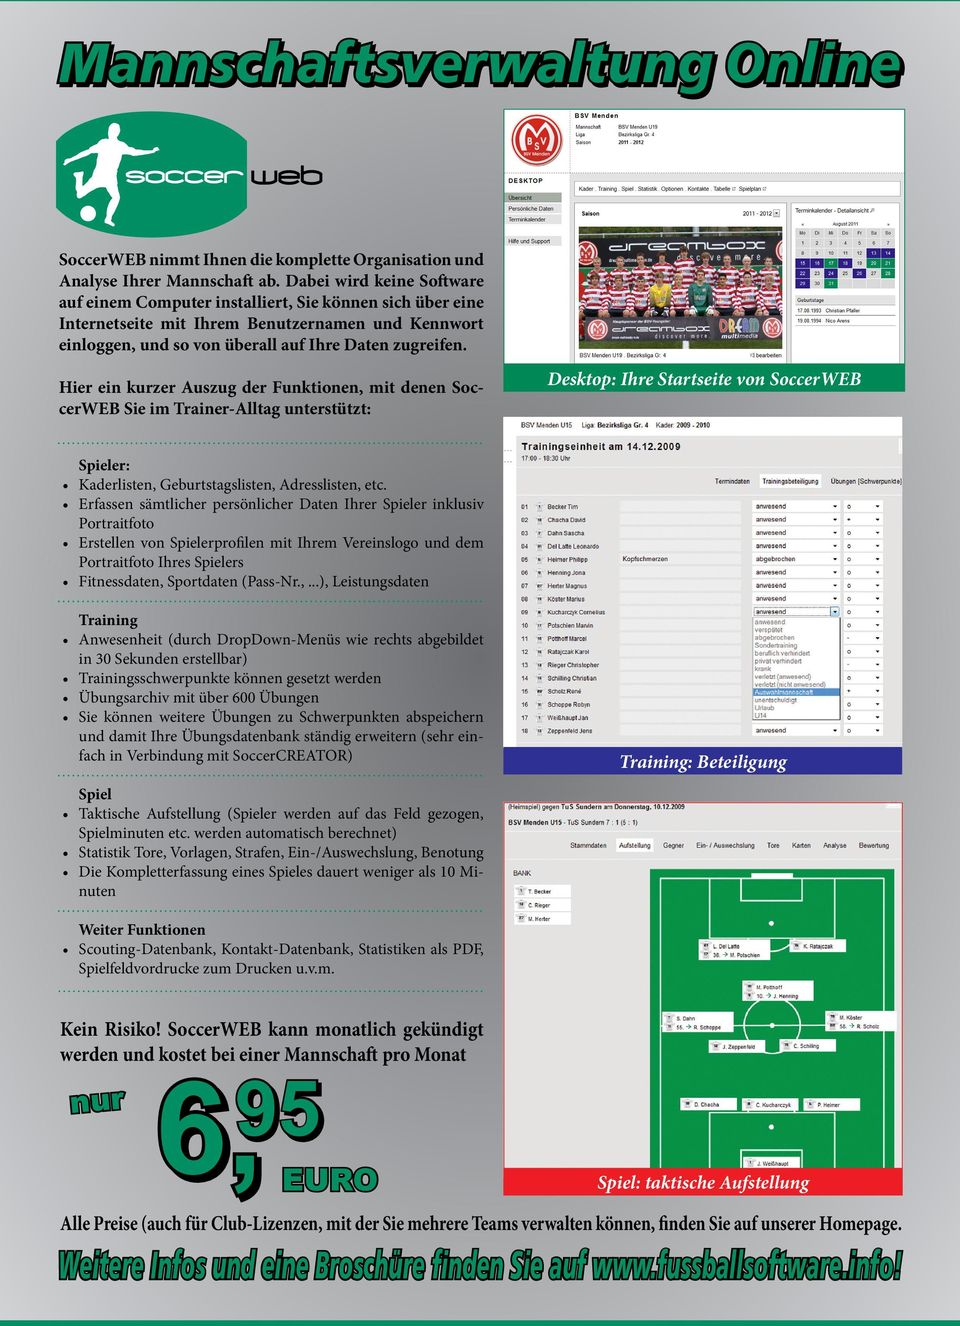 Hier ein kurzer Auszug der Funktionen, mit denen SoccerWEB Sie im Trainer-Alltag unterstützt: Desktop: Ihre Startseite von SoccerWEB Spieler: Kaderlisten, Geburtstagslisten, Adresslisten, etc.